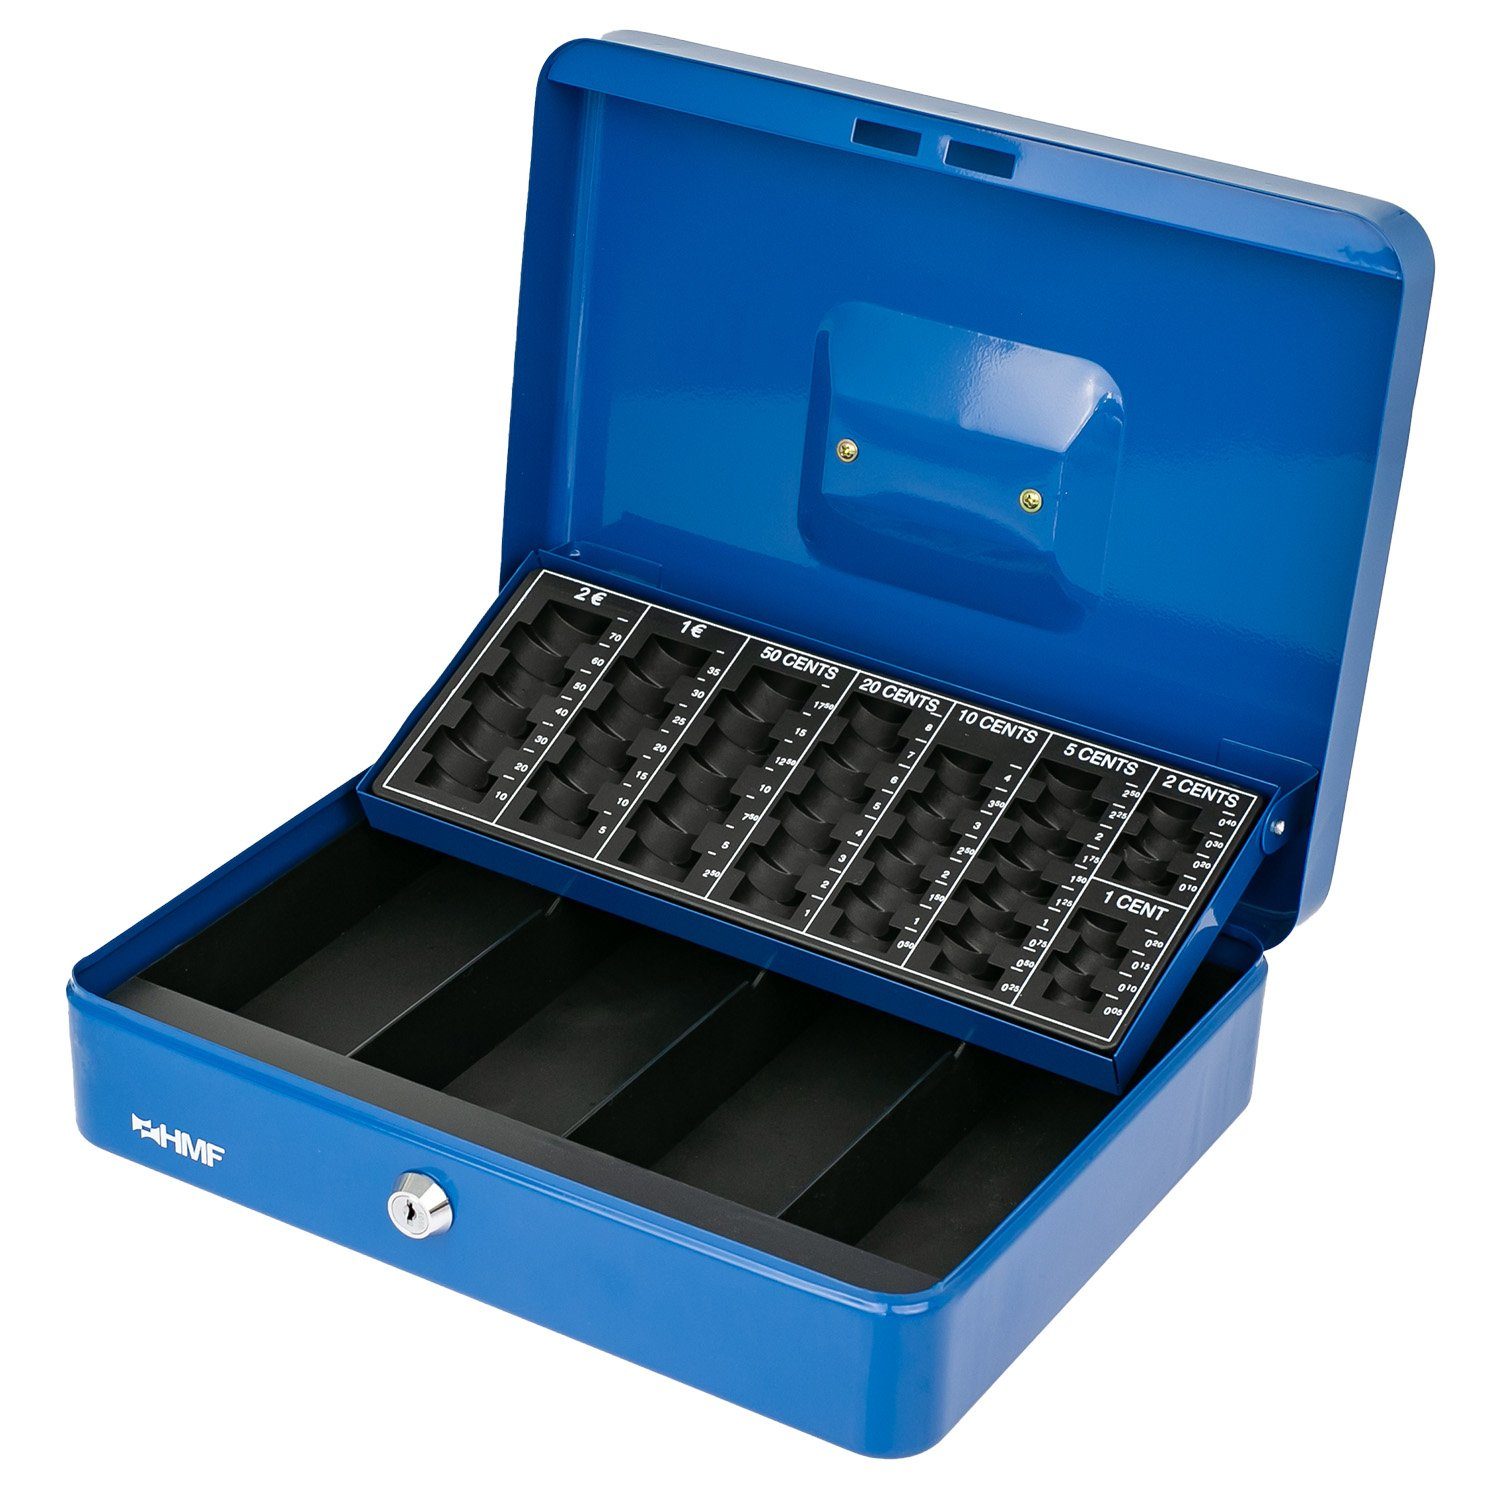 Geldbox Abschließbare Münzzählbrett mit robuste blau 30,5x24x8,5cm HMF Geldkassette Bargeldkasse Scheinfach, Schlüssel, und mit